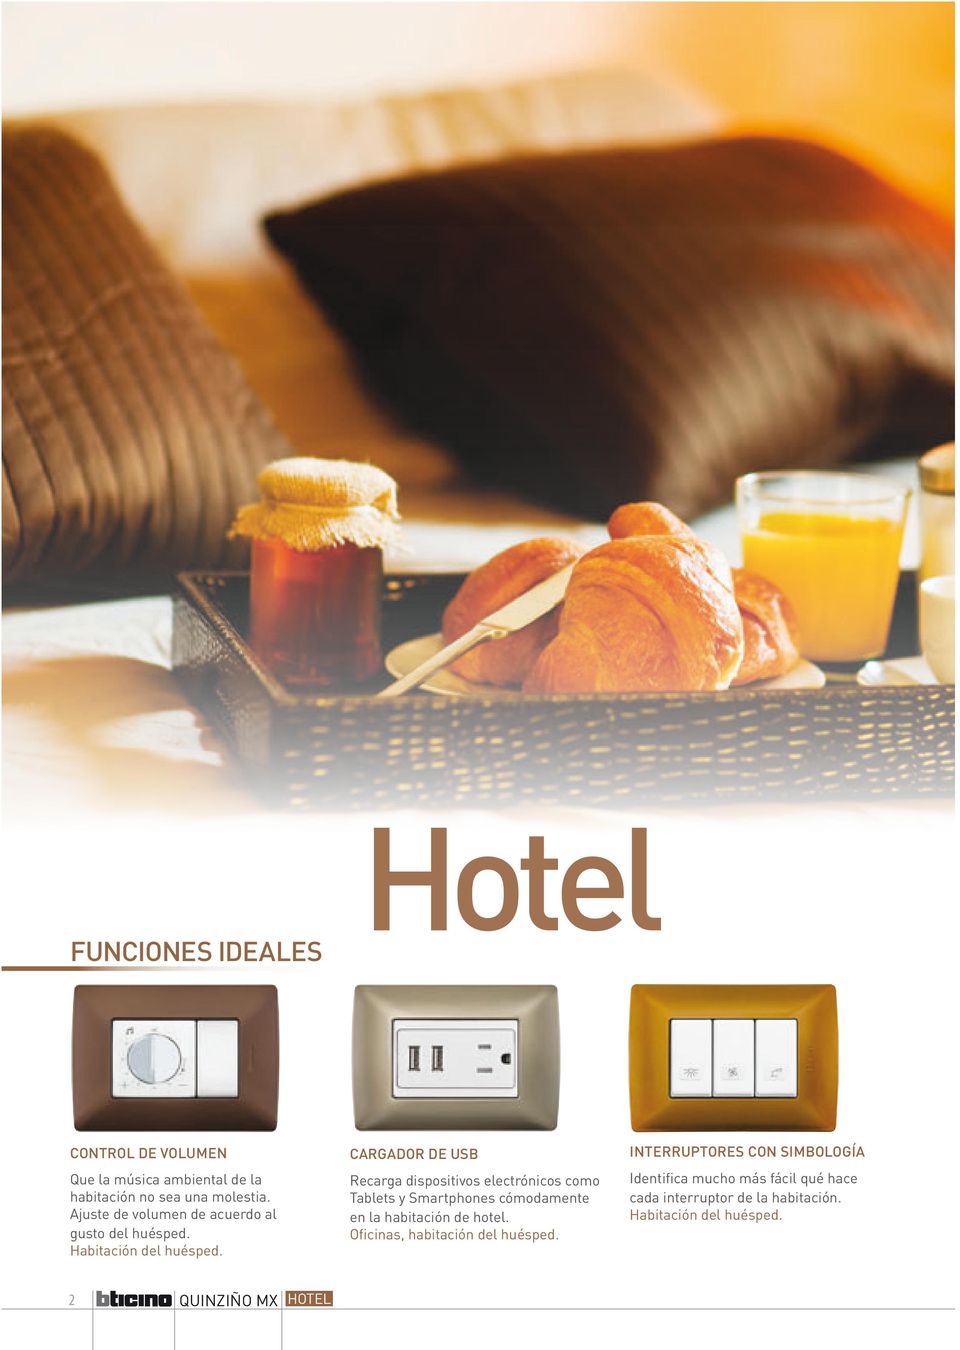 CARGADOR DE USB Recarga dispositivos electrónicos como Tablets y Smartphones cómodamente en la habitación de hotel.